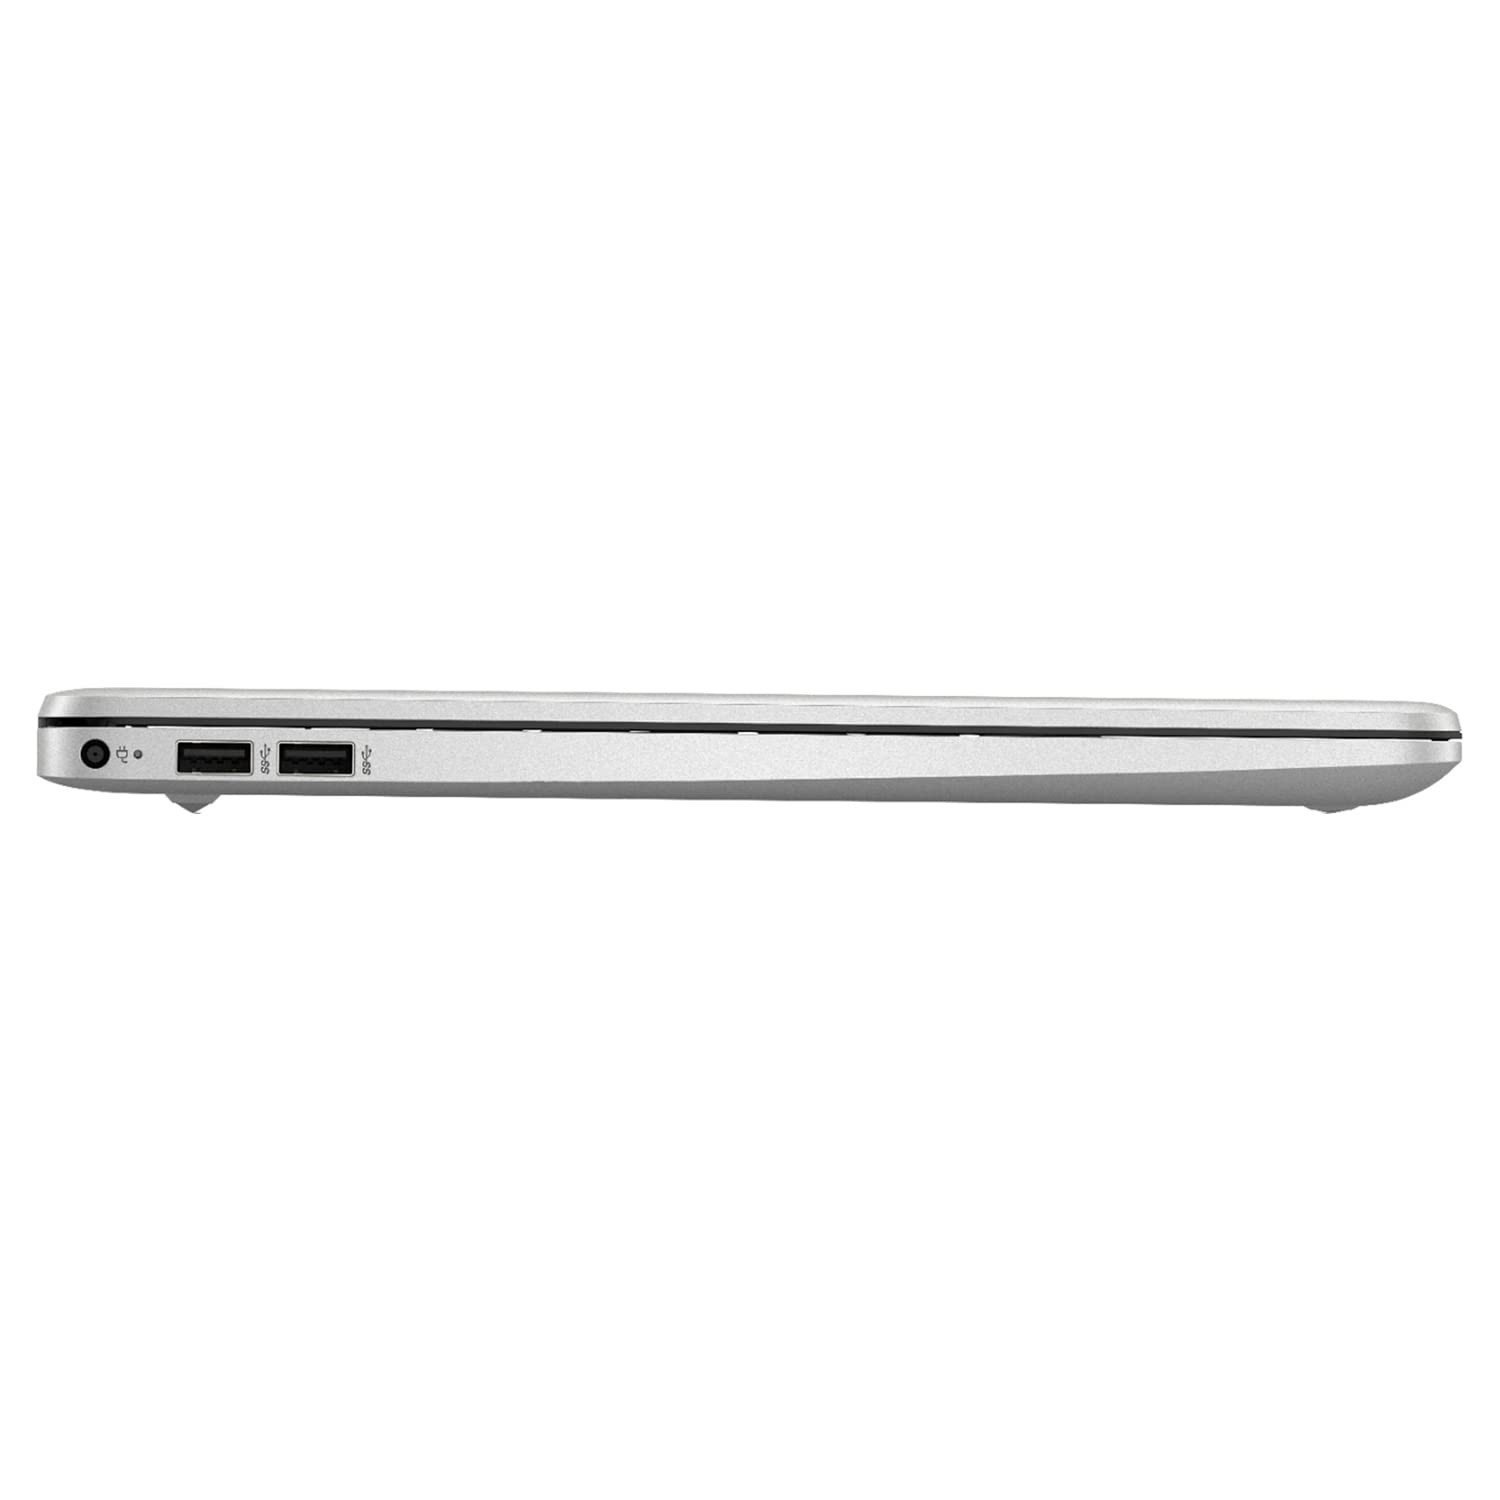 HP 15 Notebook Laptop, 15.6